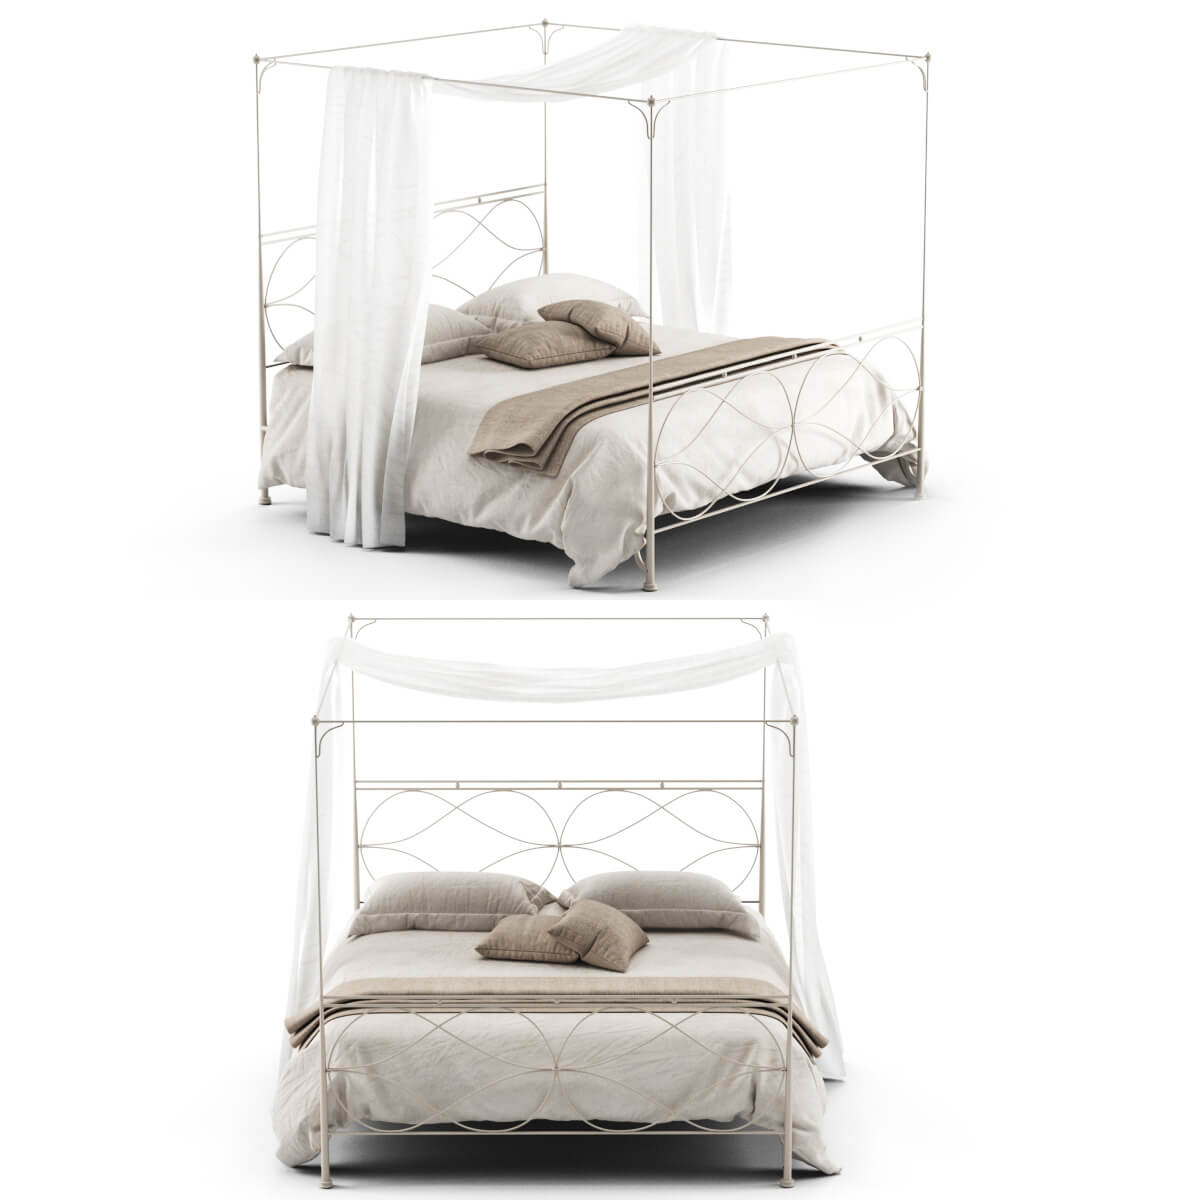 轻便米色金属床及同色床品和蚊帐3D模型（OBJ,FBX,MAX）